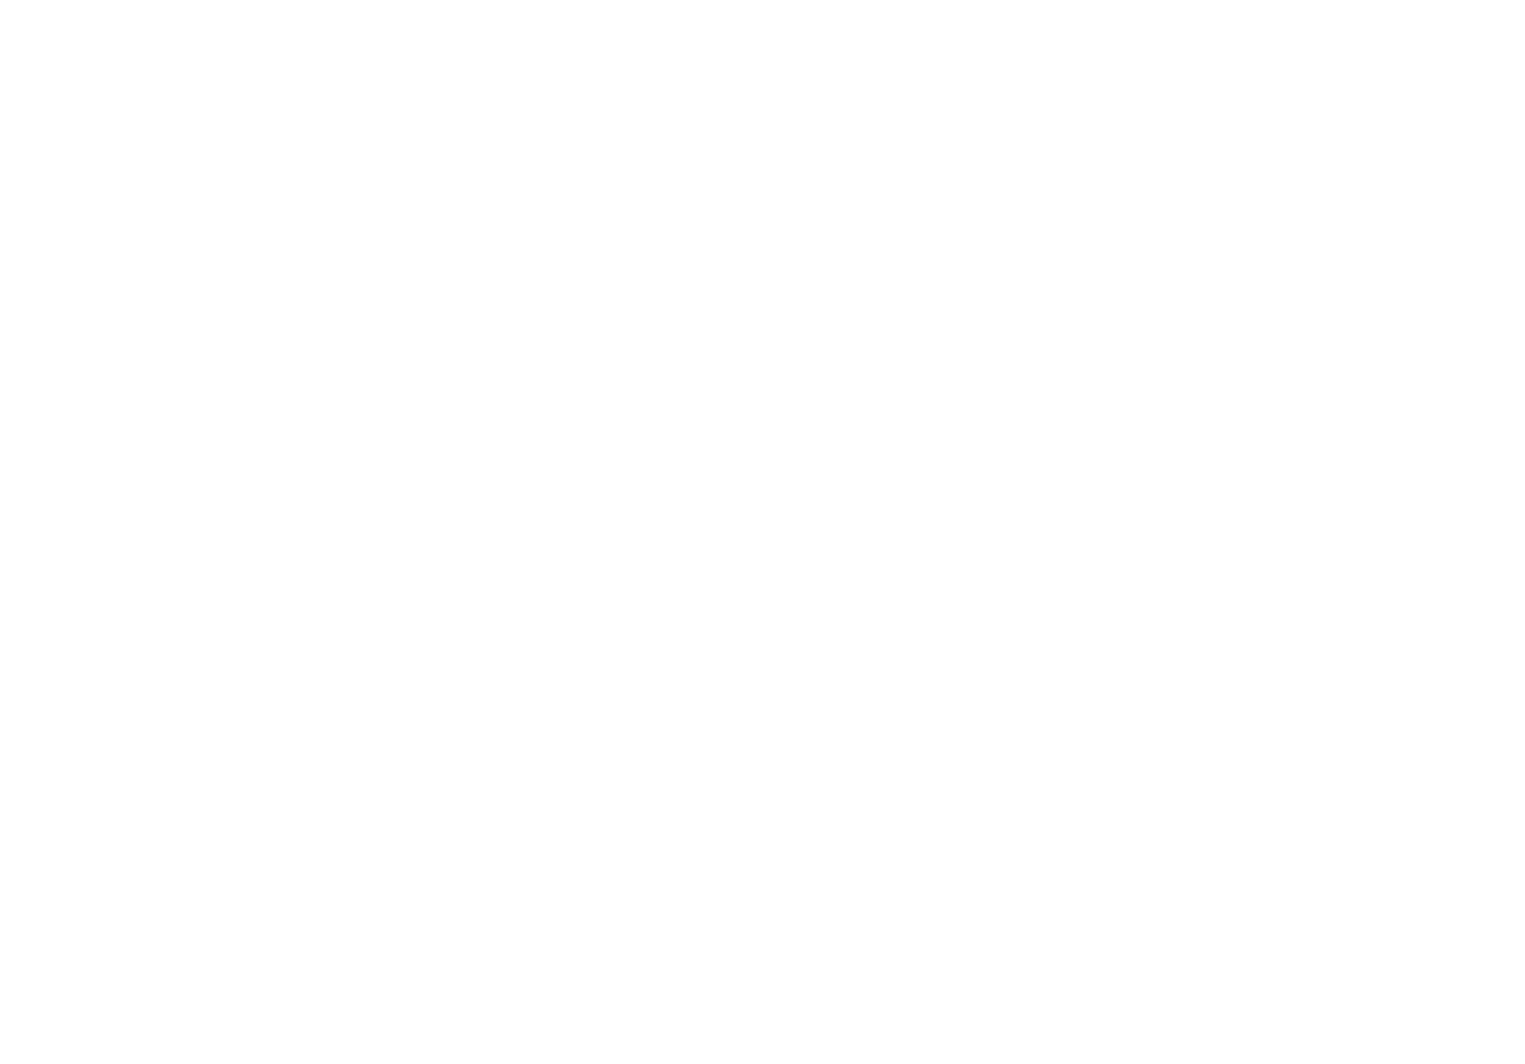 Banque nationale de Belgique logo for dark backgrounds (transparent PNG)